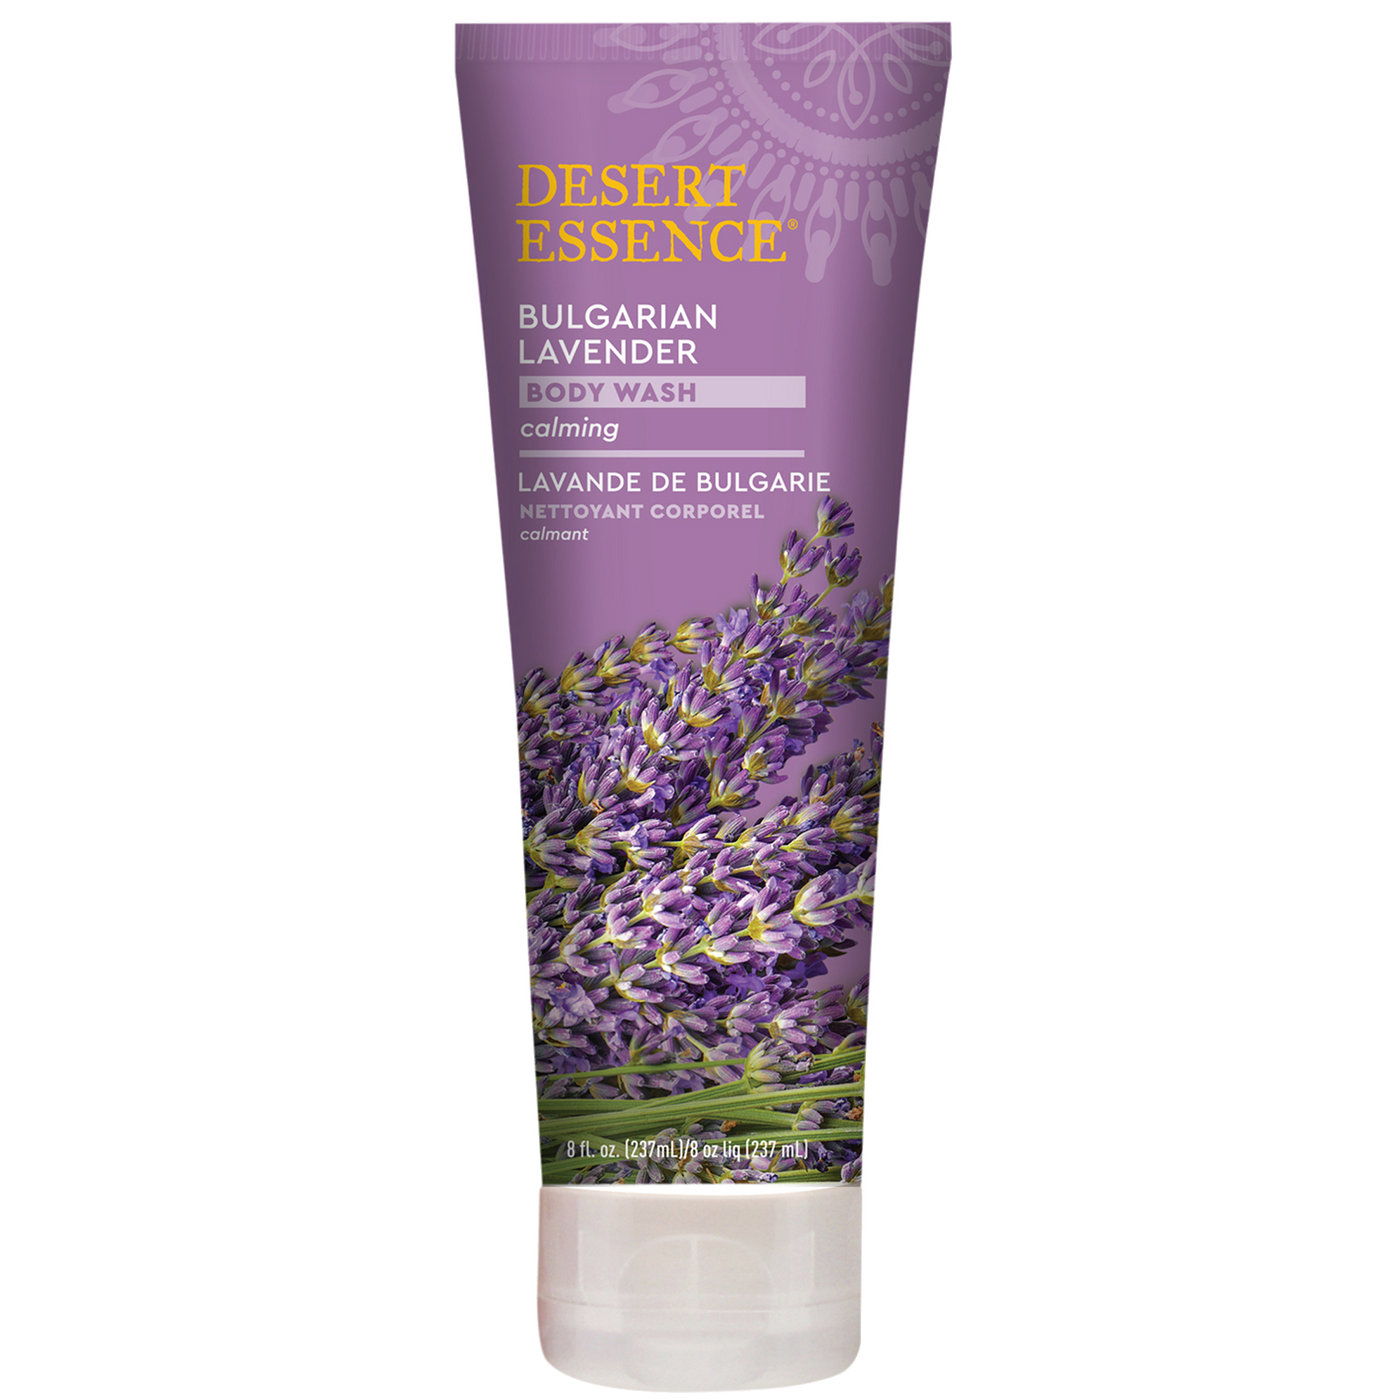 Bulgarian Lavender Body Wash 8 fl oz Curated Wellness